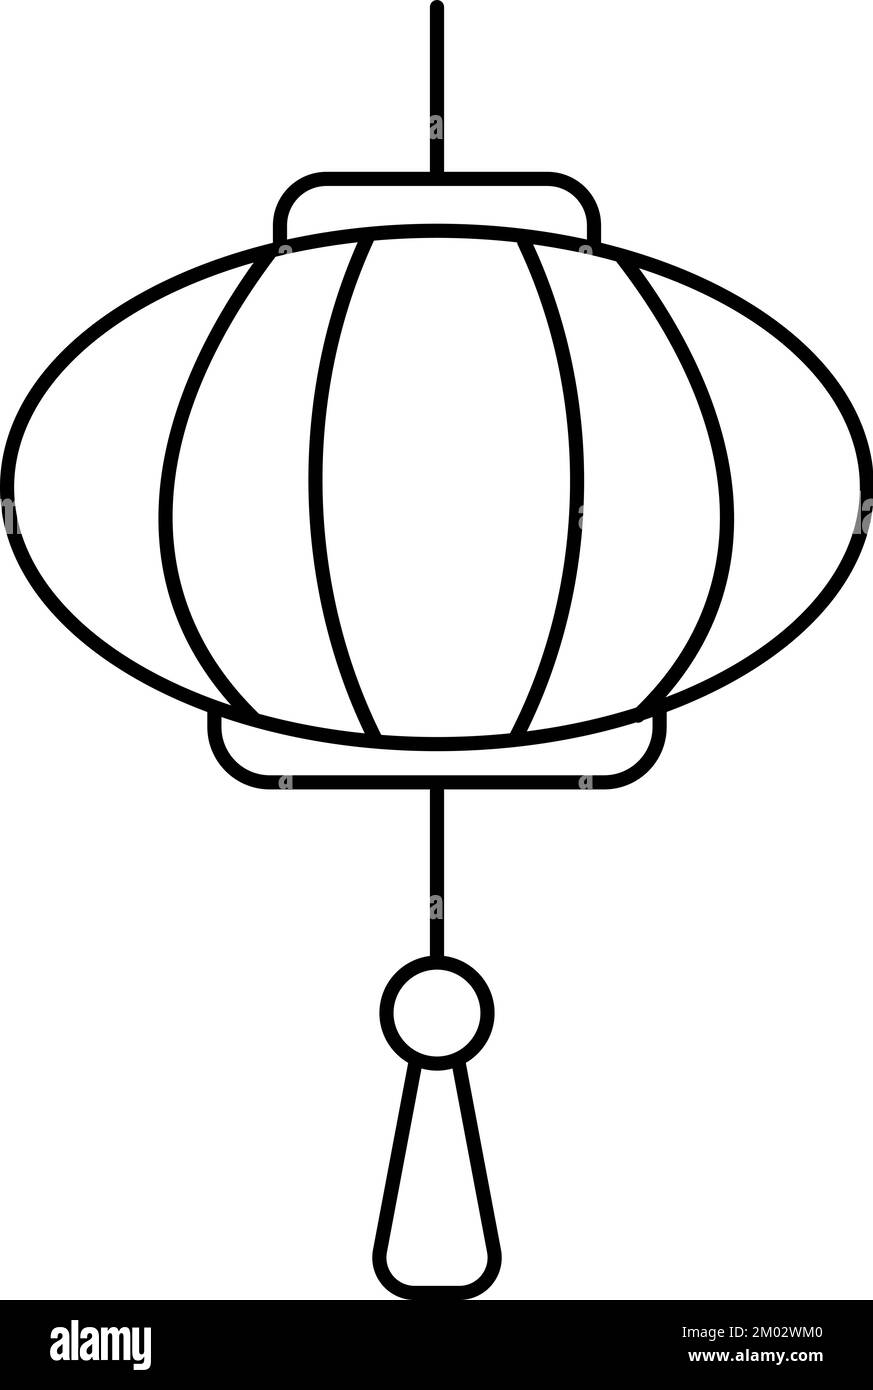 Seollal Año Nuevo linterna colgante lámpara aislado icono de línea delgada. Vector CNY, linterna japonesa coreana, lámpara del festival de primavera oriental. Lunar asiático Ilustración del Vector